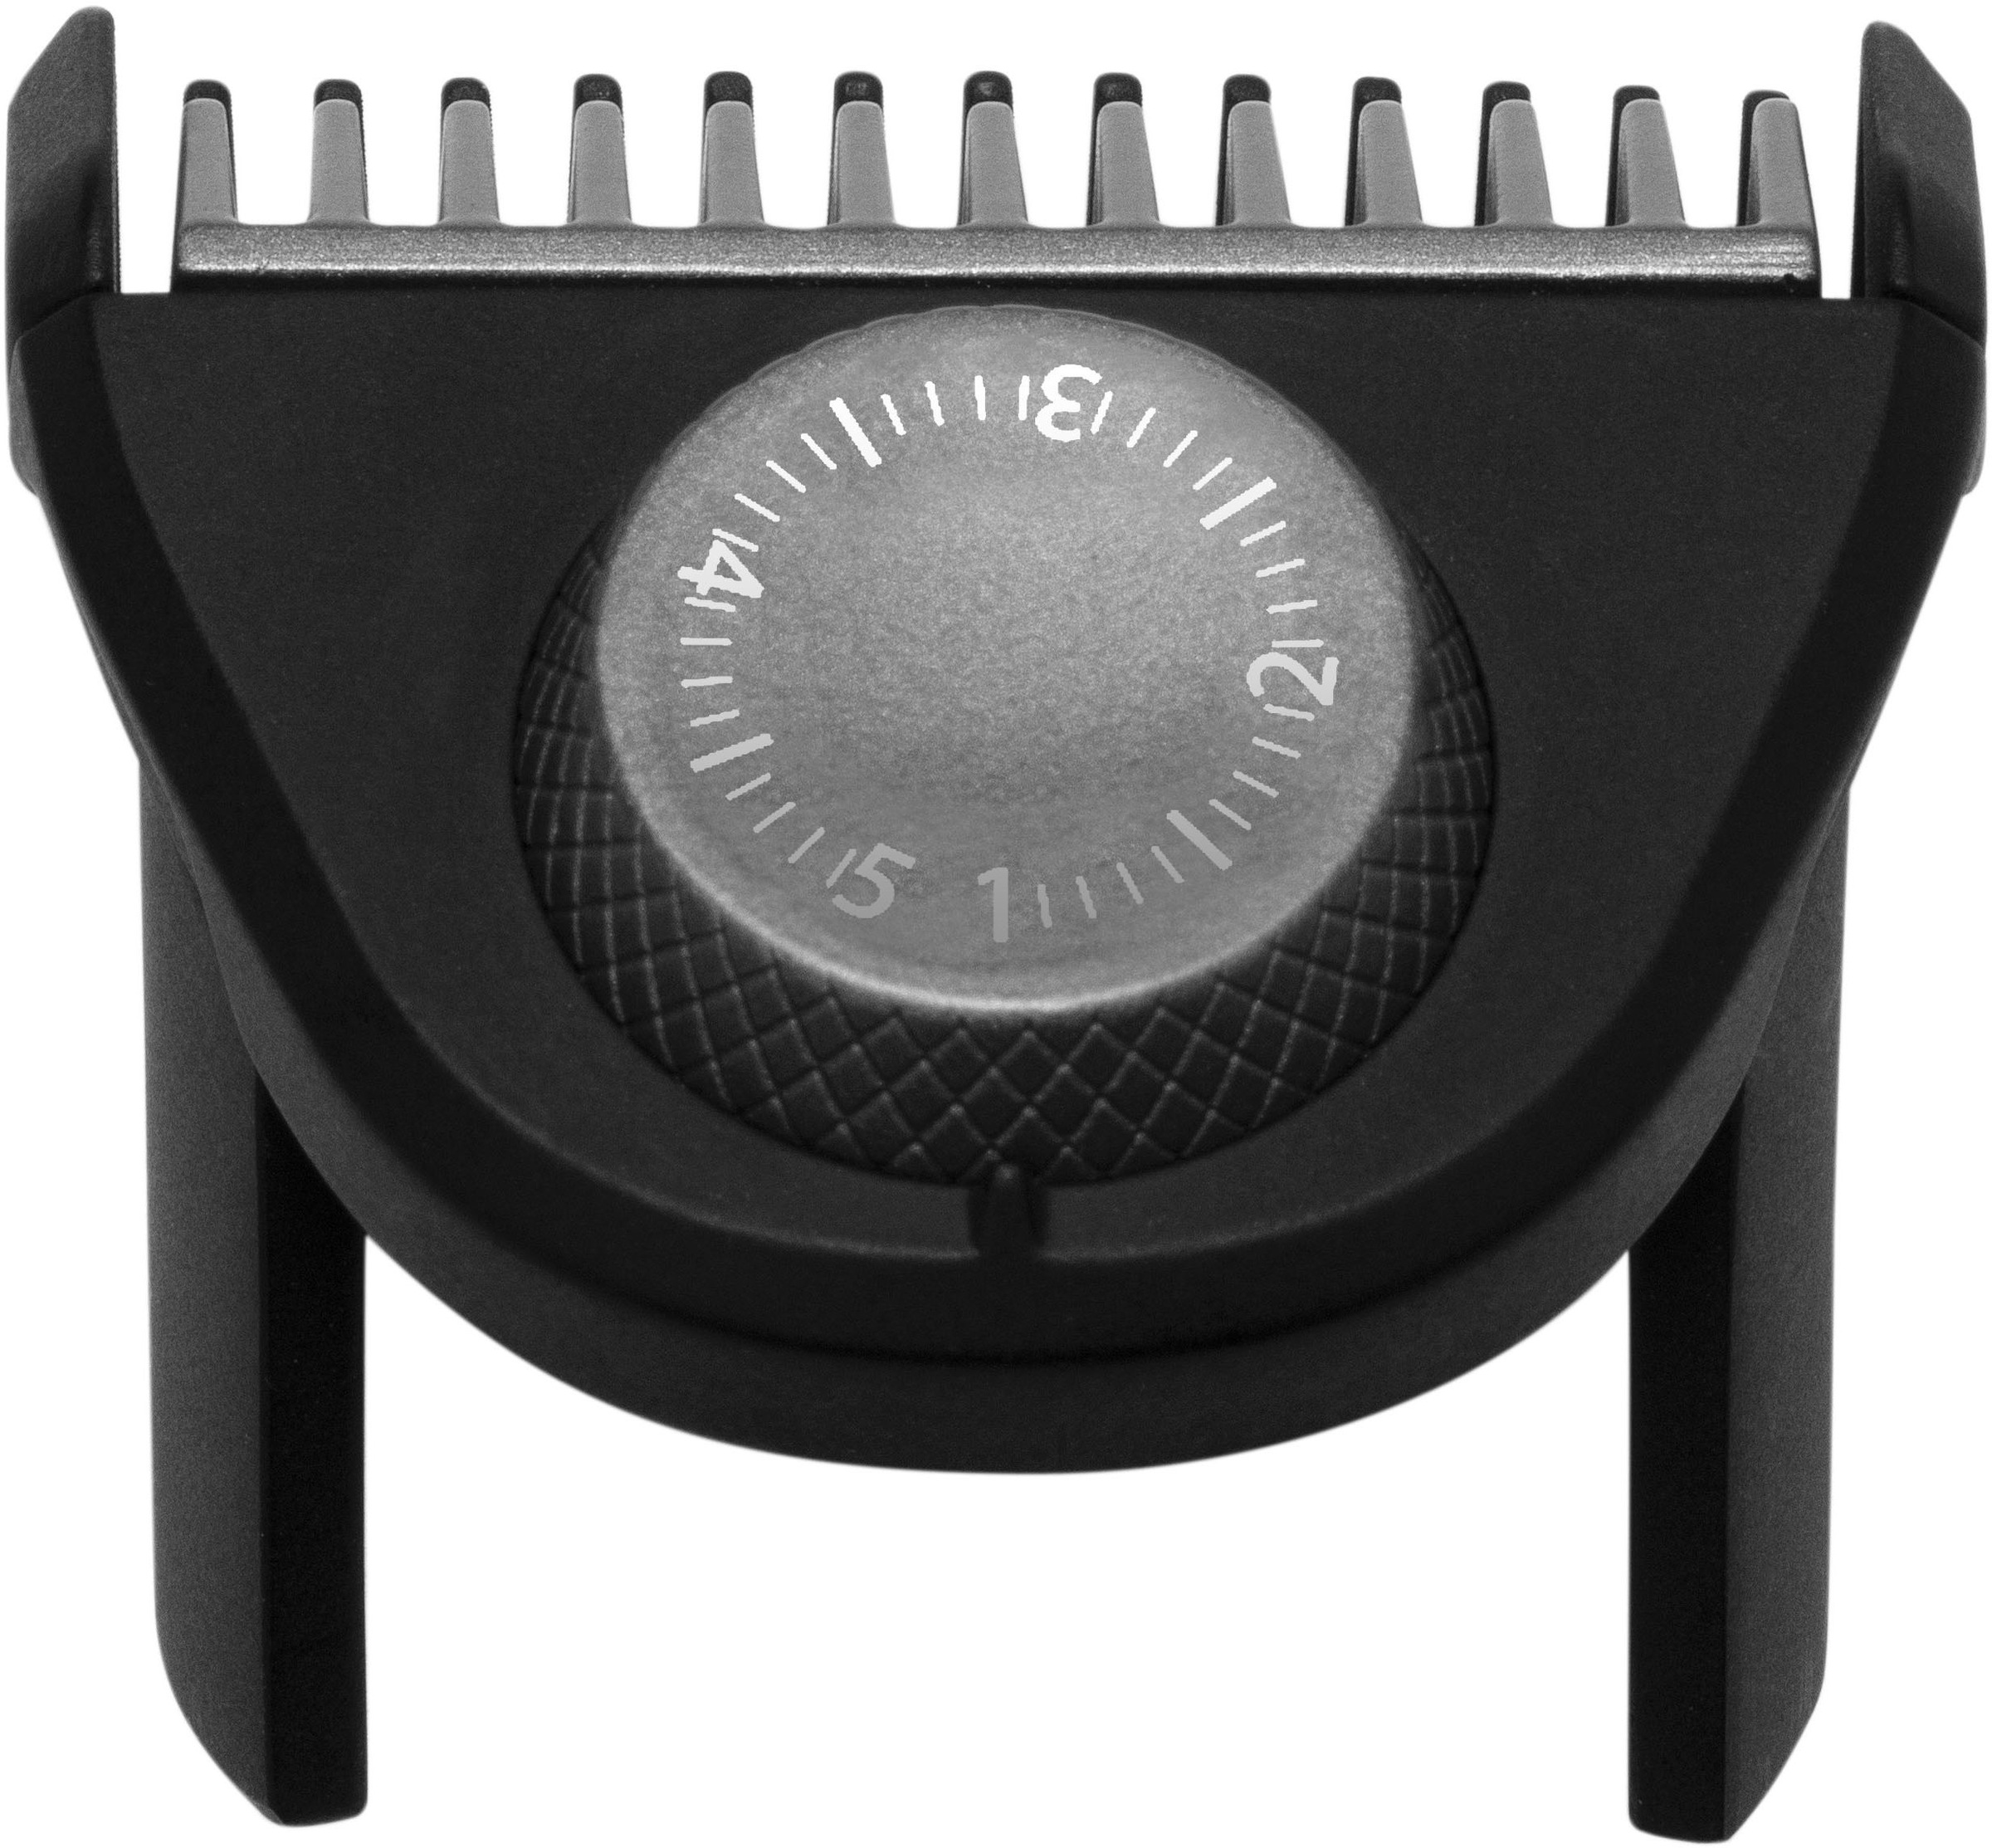 Remington Haarschneider »Power-X Series HC5000«, 4 Aufsätze, Längeneinstellrad, Haar-und Bartkamm, abnehm- und abwaschbare Klingen